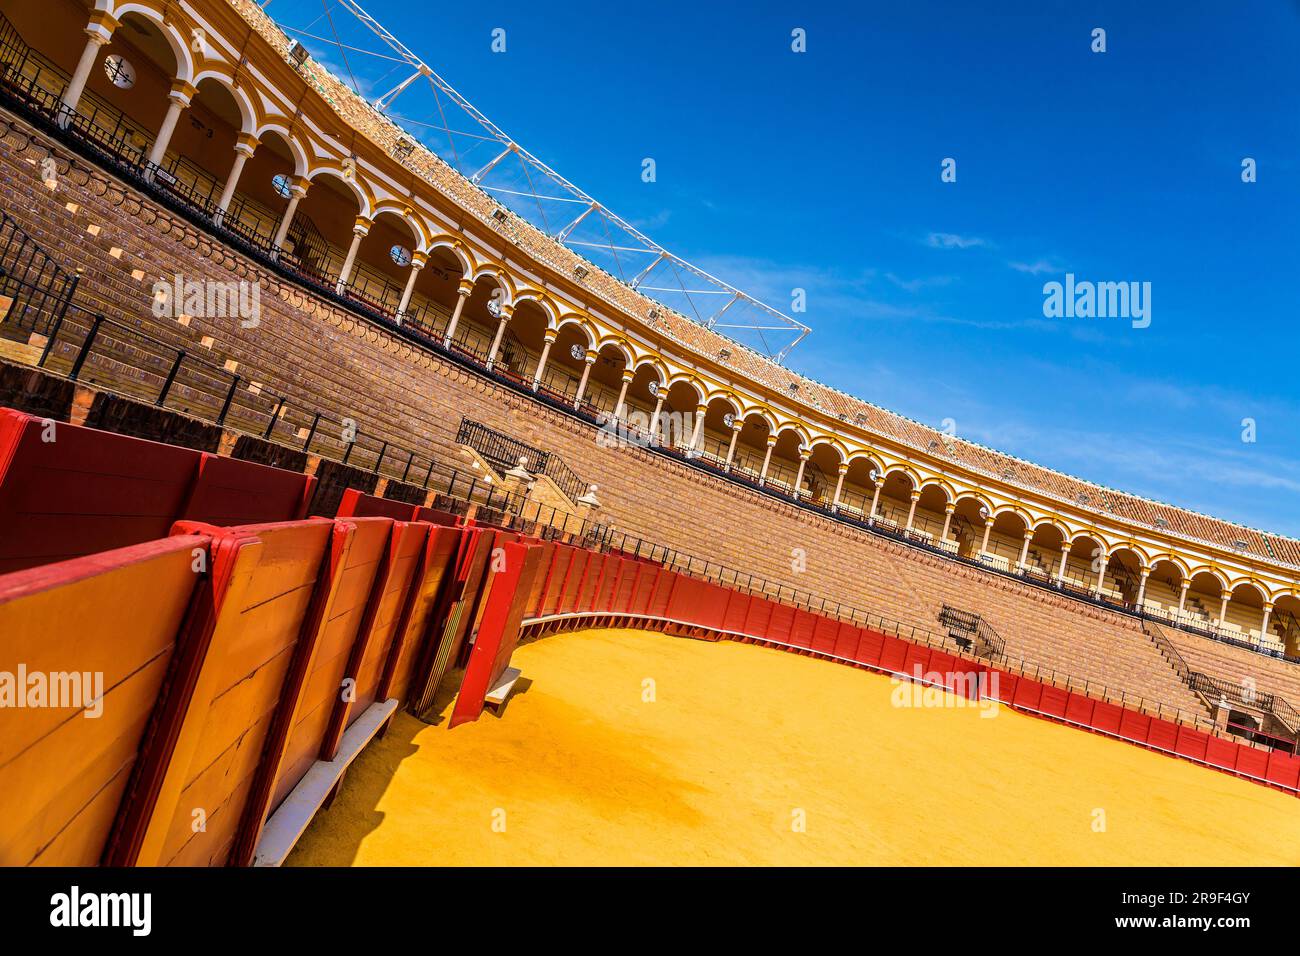 La Plaza de Toros de la Real Maestranza de Caballeria de Sevilla est un arènes d'une capacité de 12 000 à Séville, en Espagne. Banque D'Images